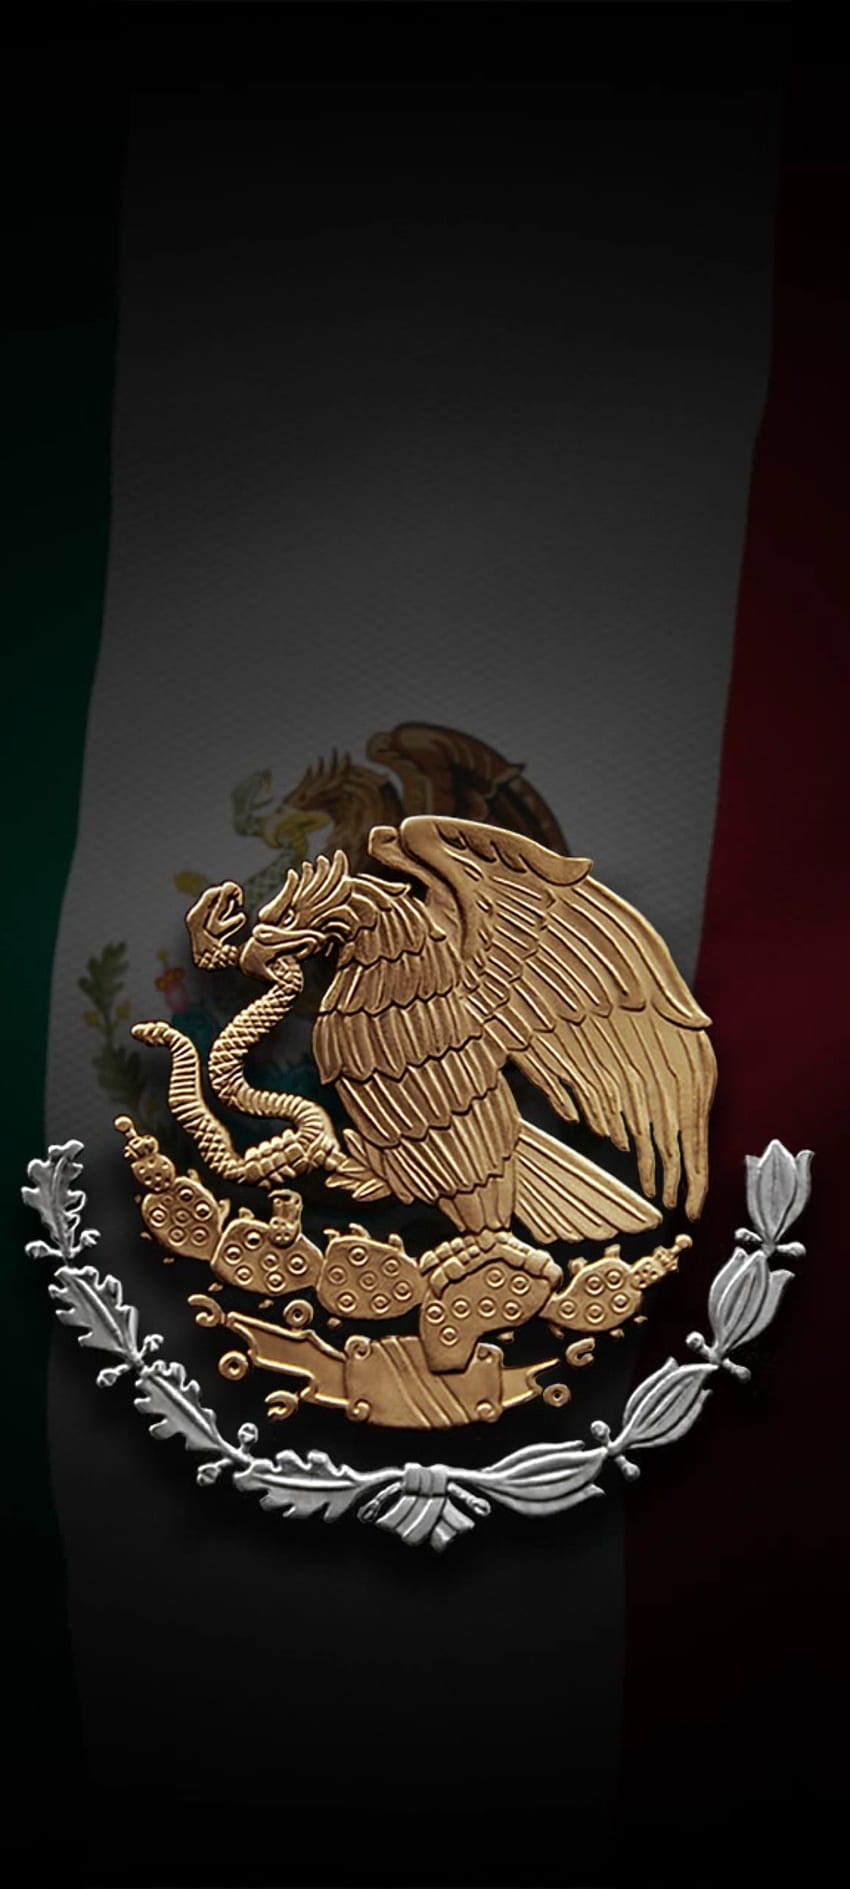 ゴールデン メキシコ ダーク、アーティファクト、バッジ、旗、ビジネス、ロゴ HD電話の壁紙